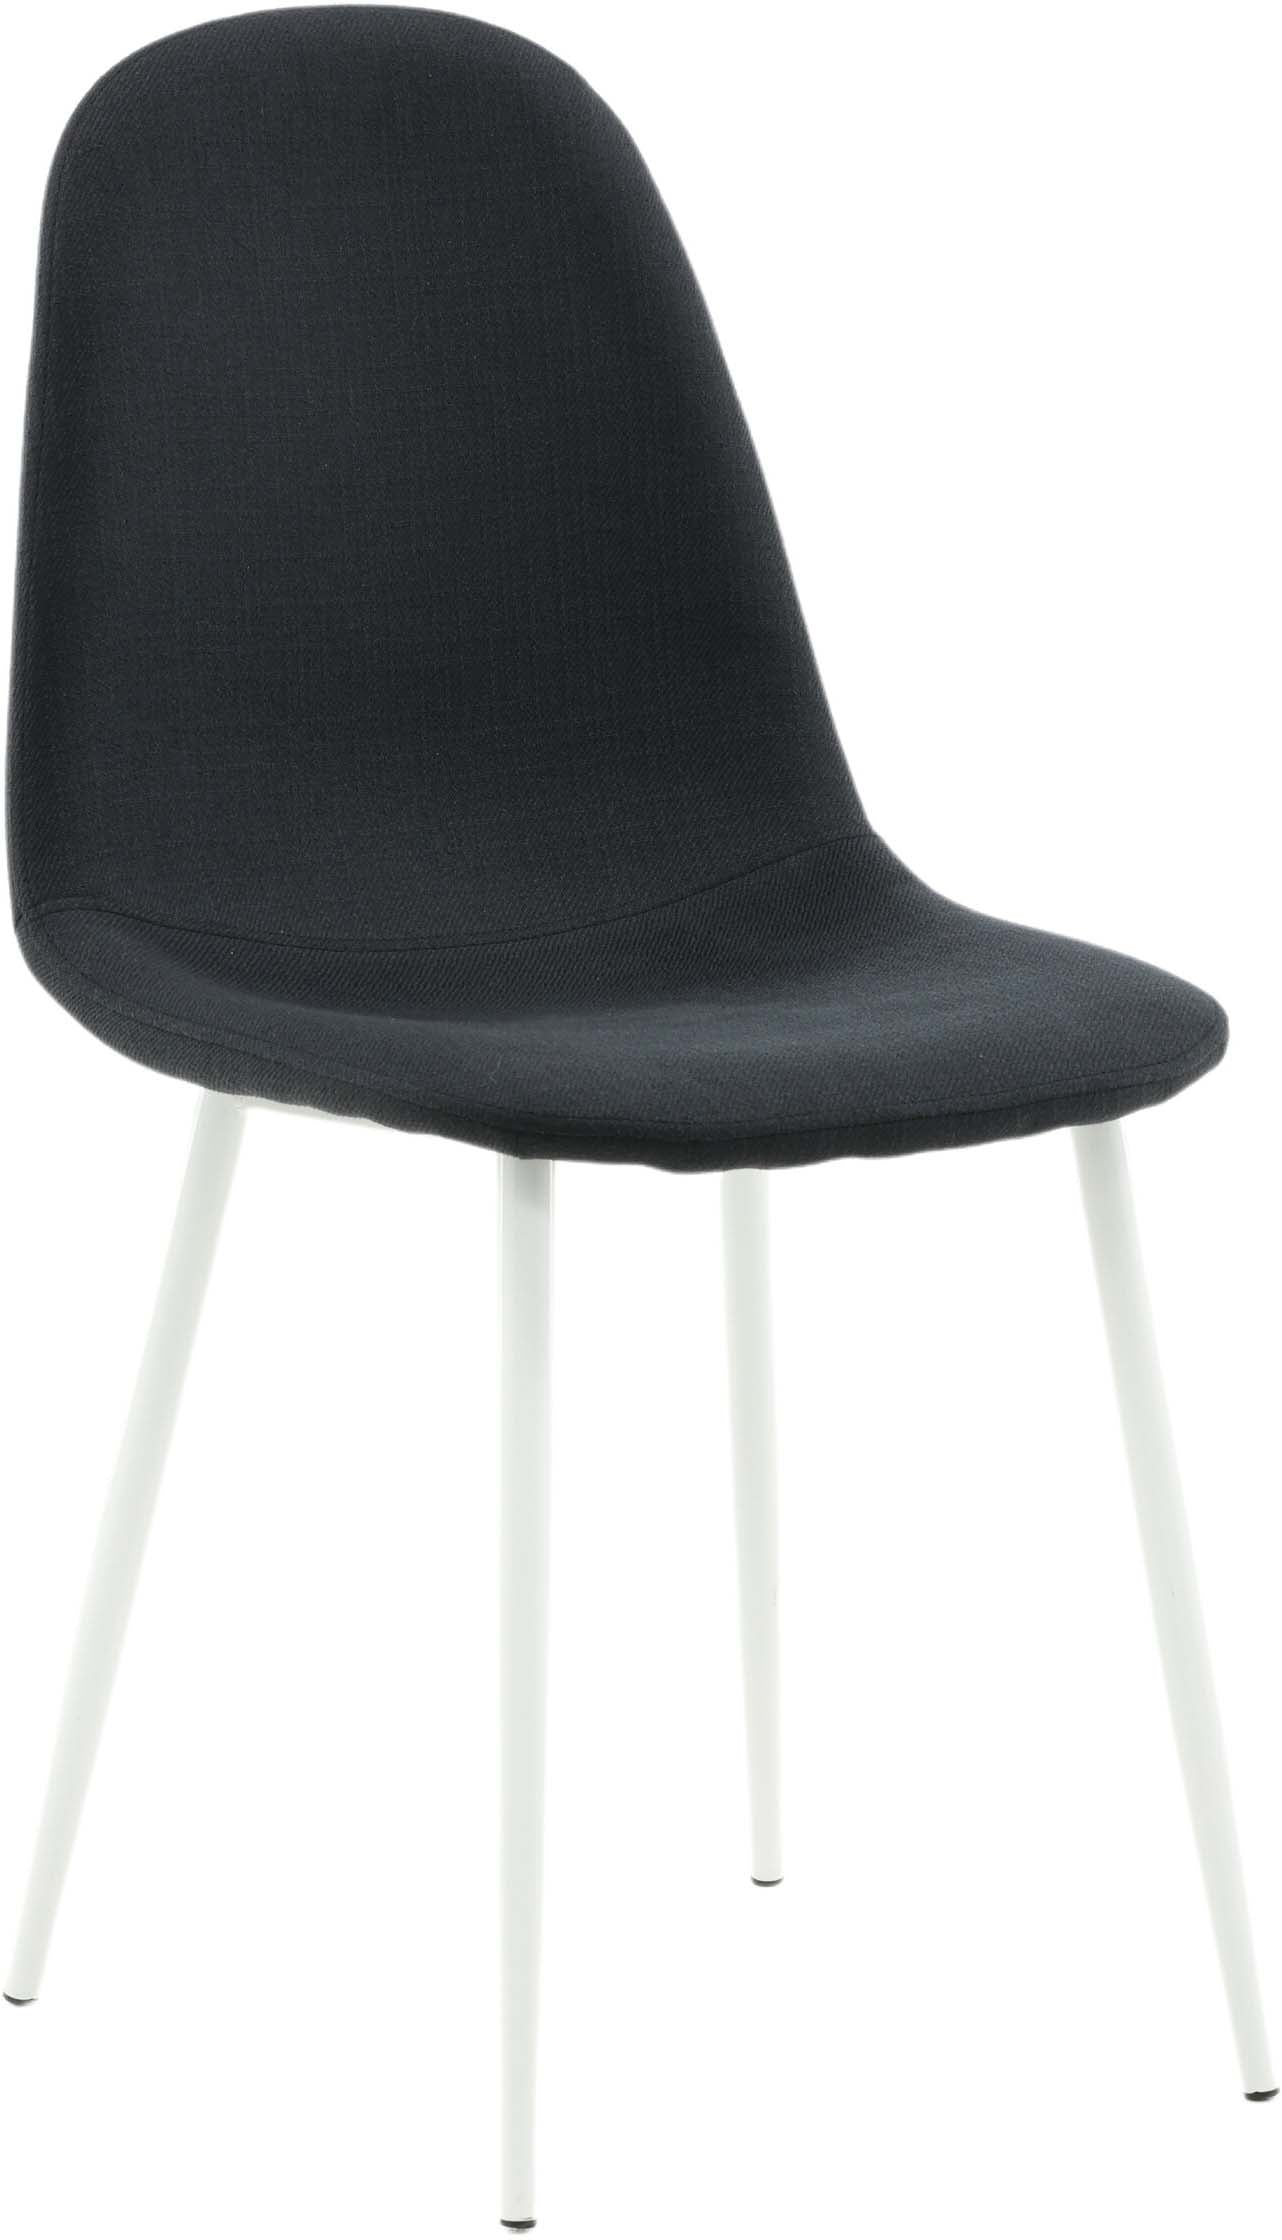 Polar Stuhl in Schwarz/Weiss präsentiert im Onlineshop von KAQTU Design AG. Stuhl ist von Venture Home